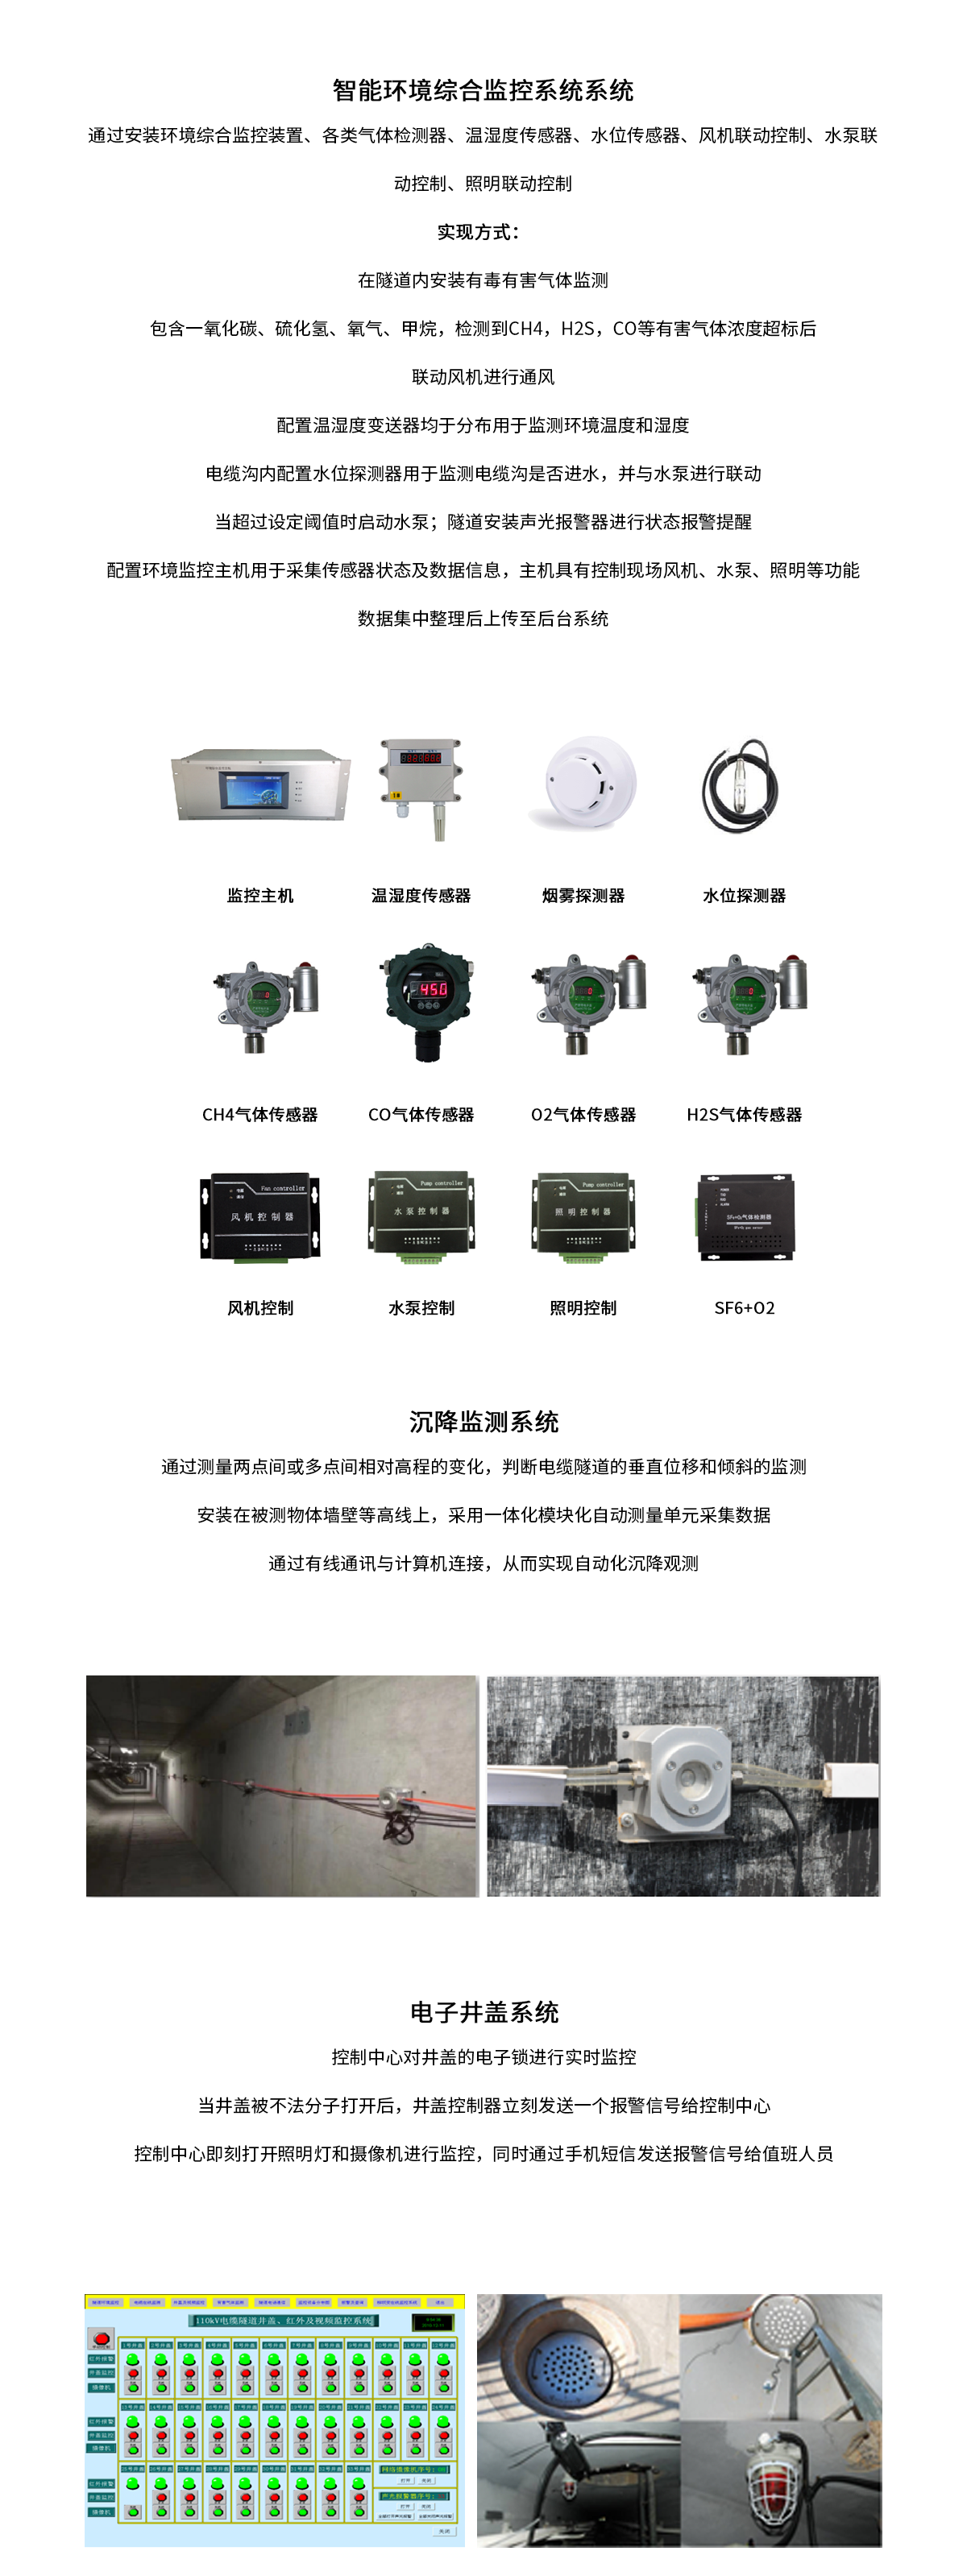 山东德州天衢-广川220kV电缆隧道项目—电缆隧道03.png